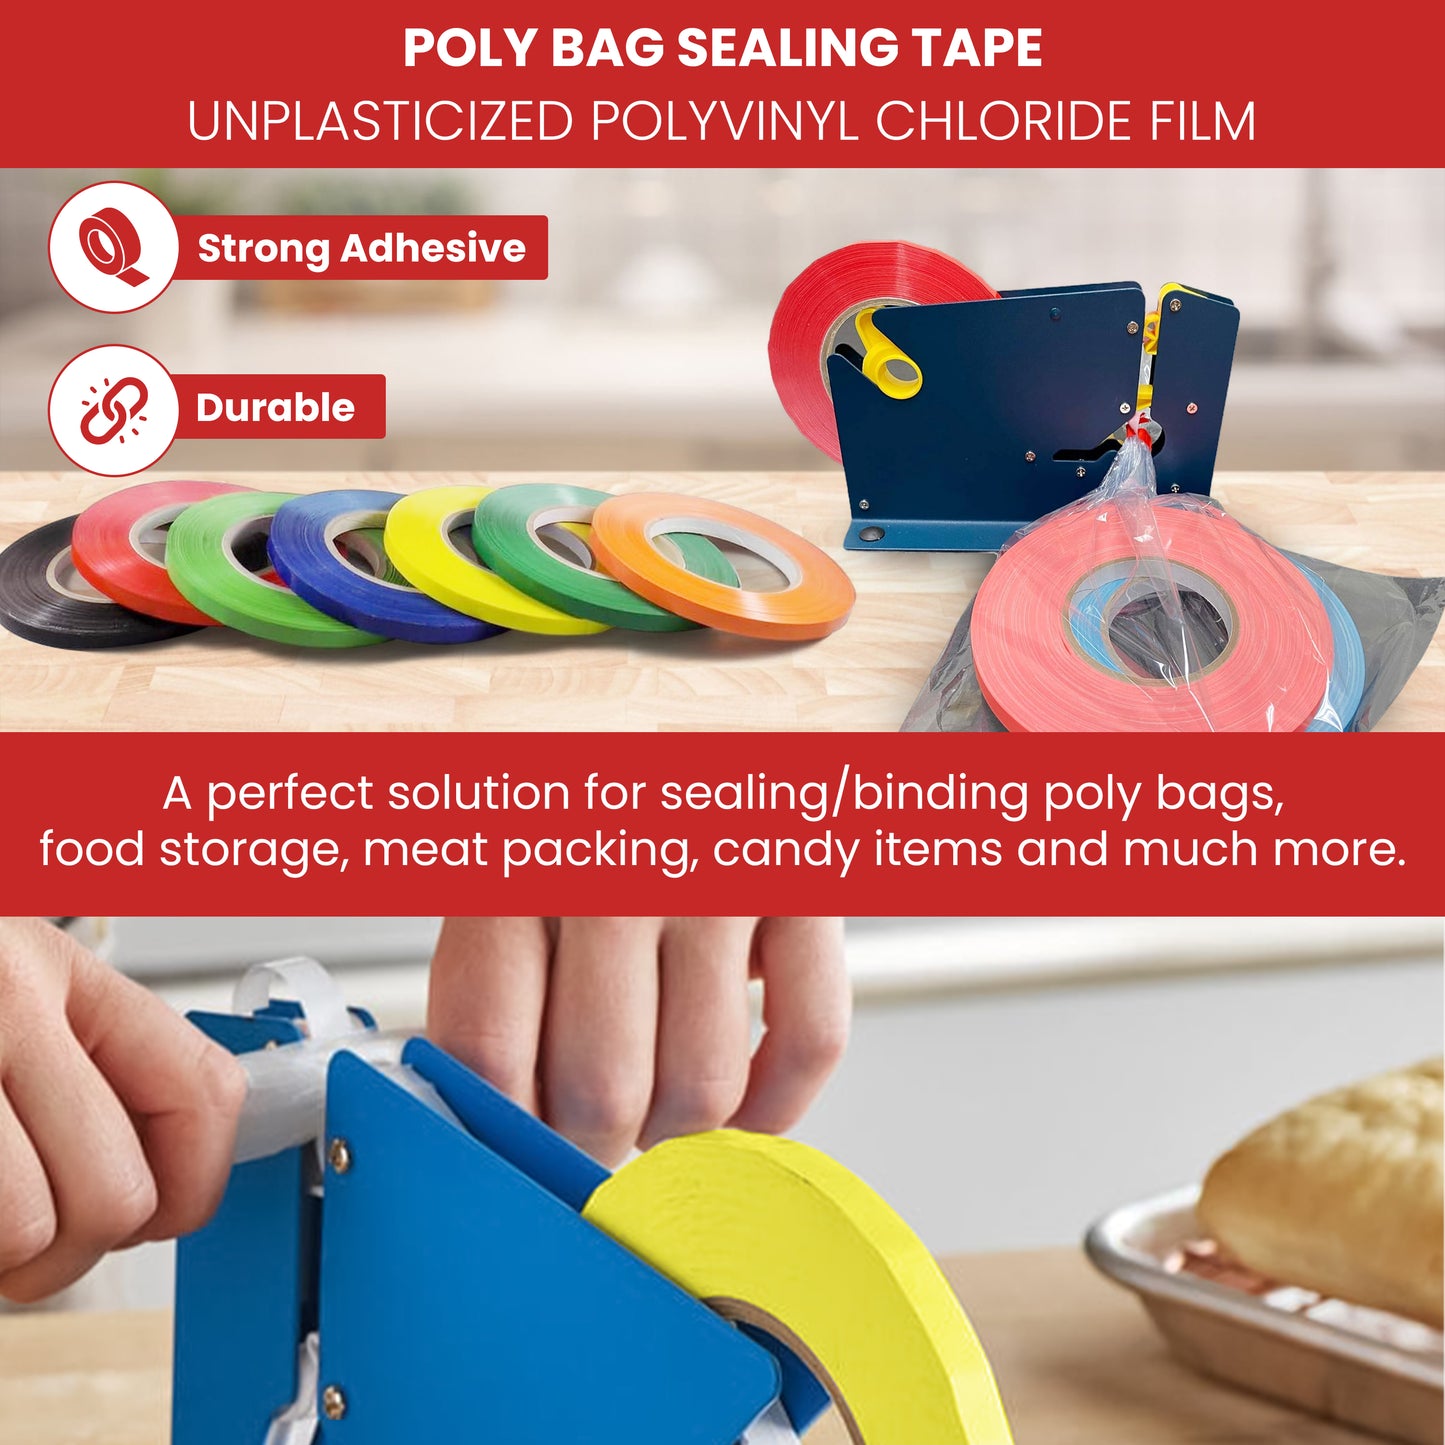 Poly Bag Sealing Tape